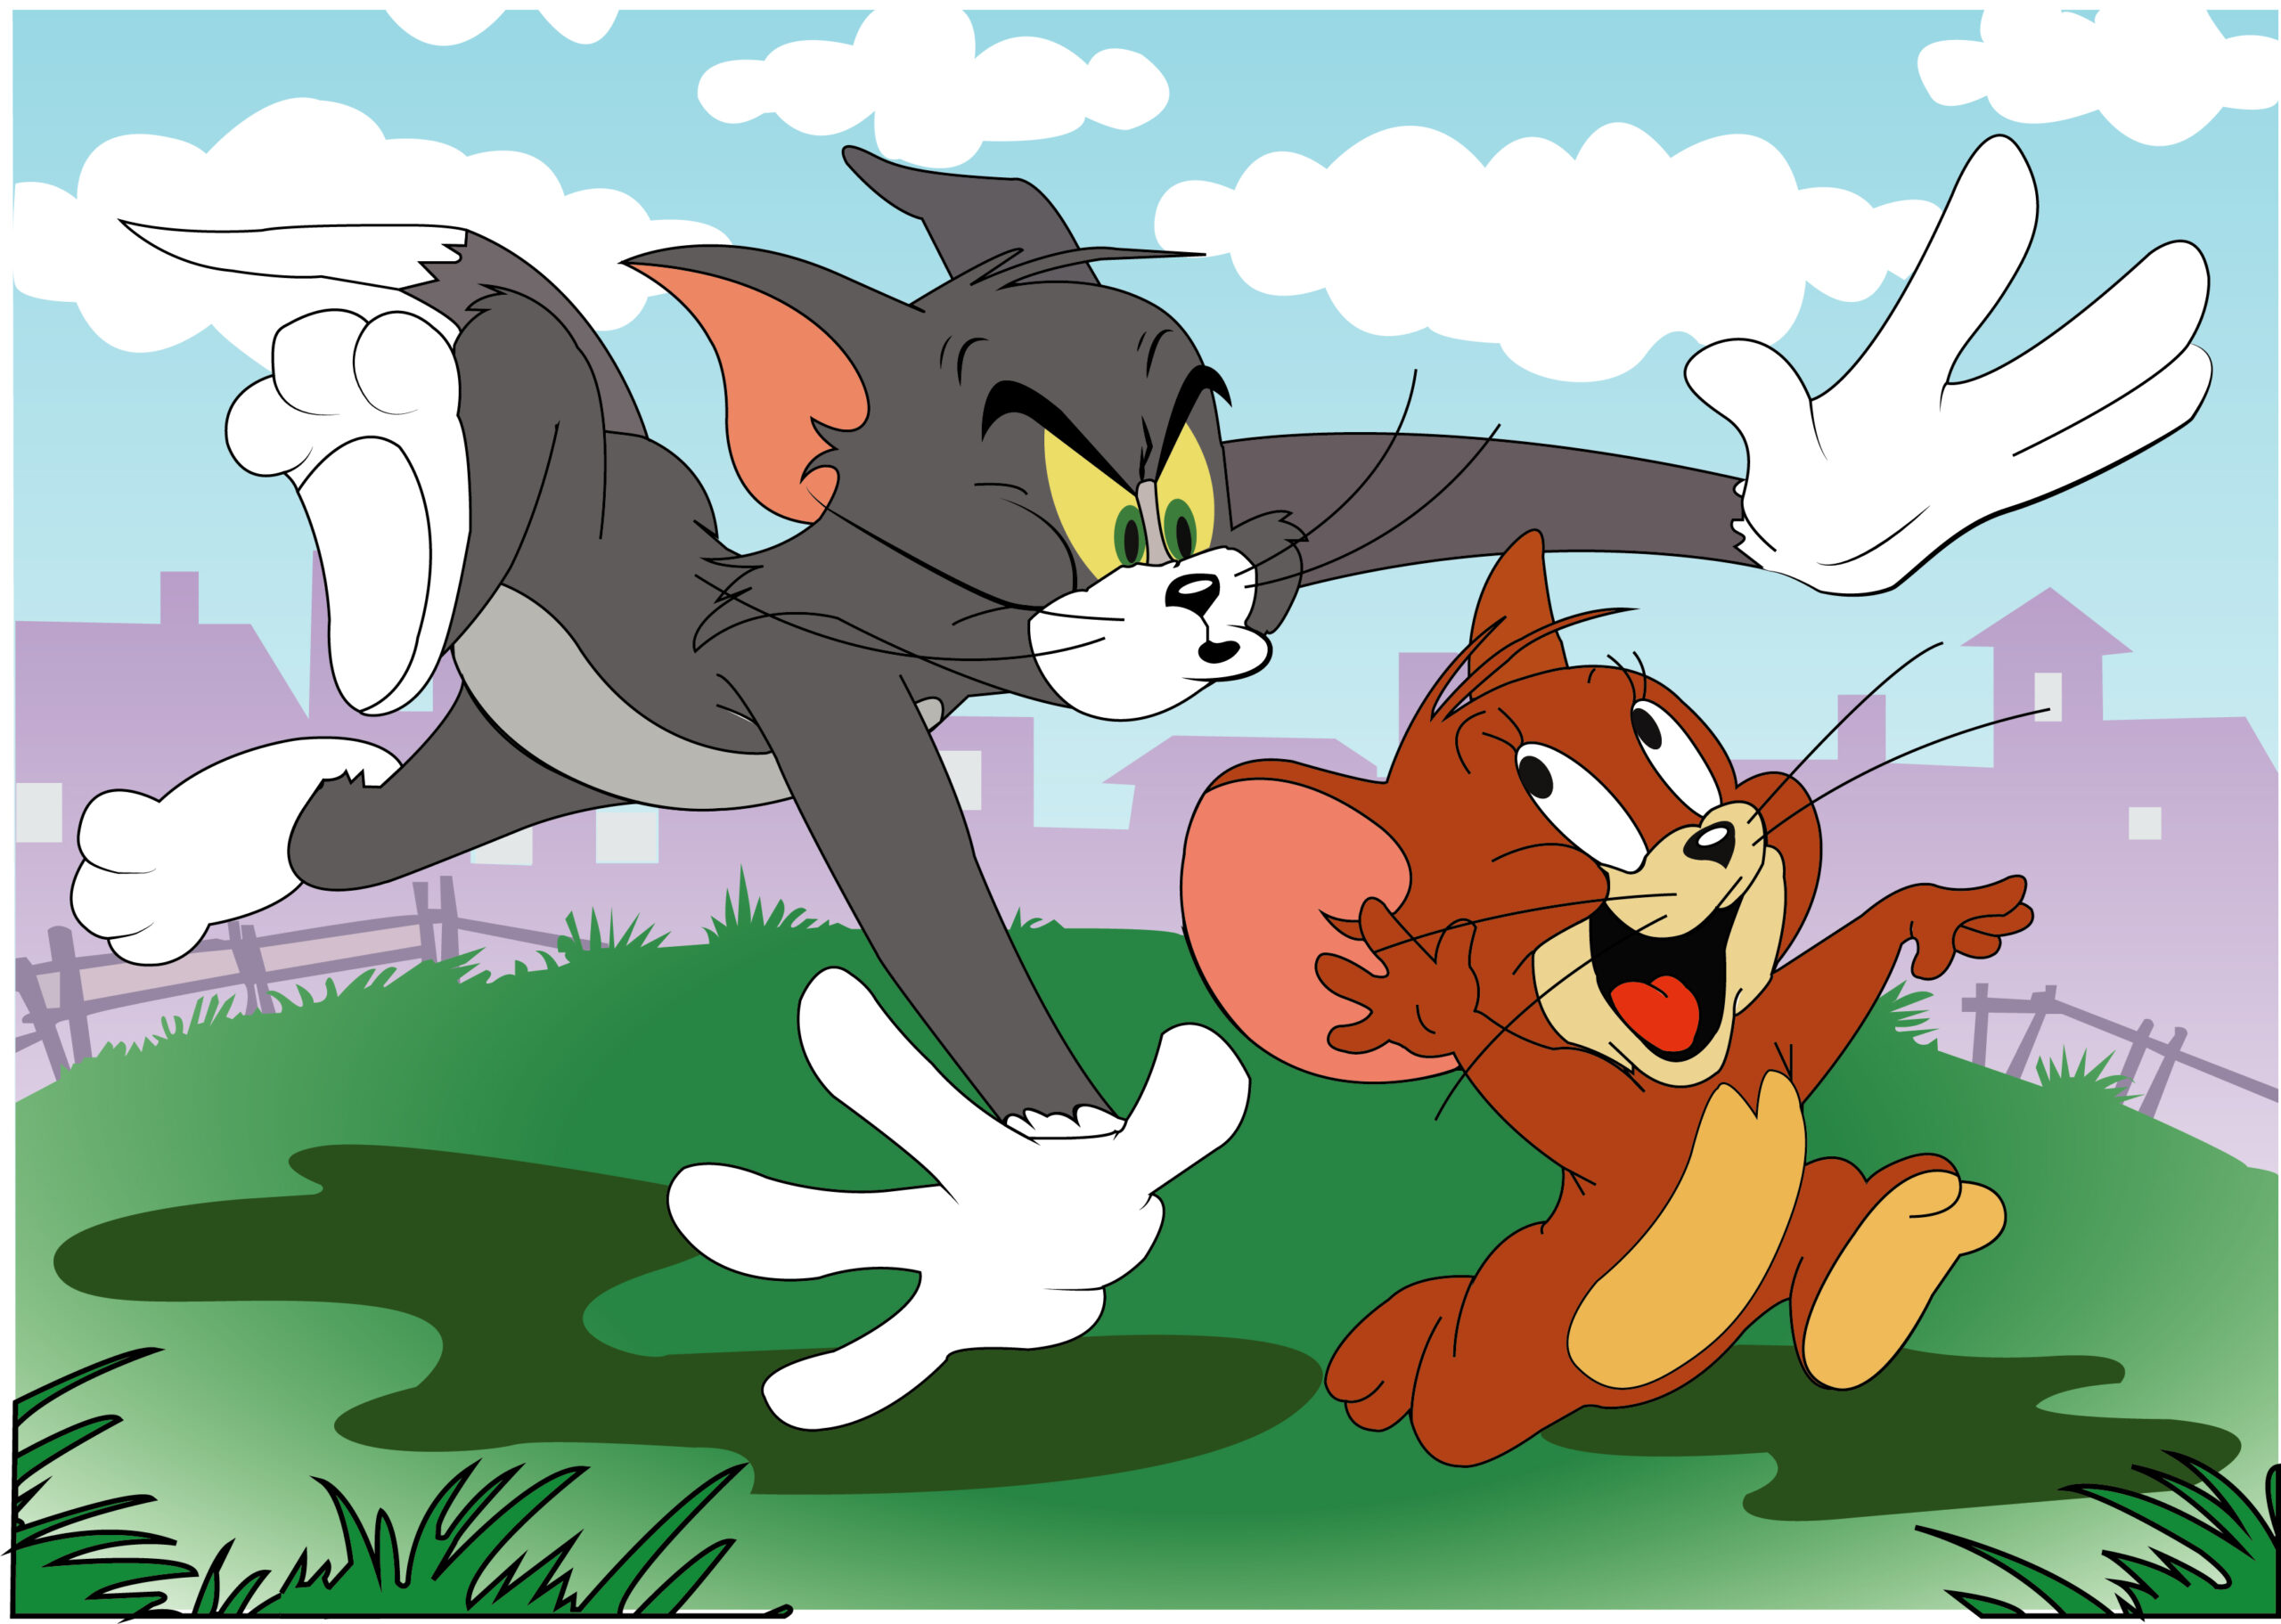 Jerry том и джерри. Tom and Jerry. Tom and Jerry cartoon. Том и Джерри погоня.